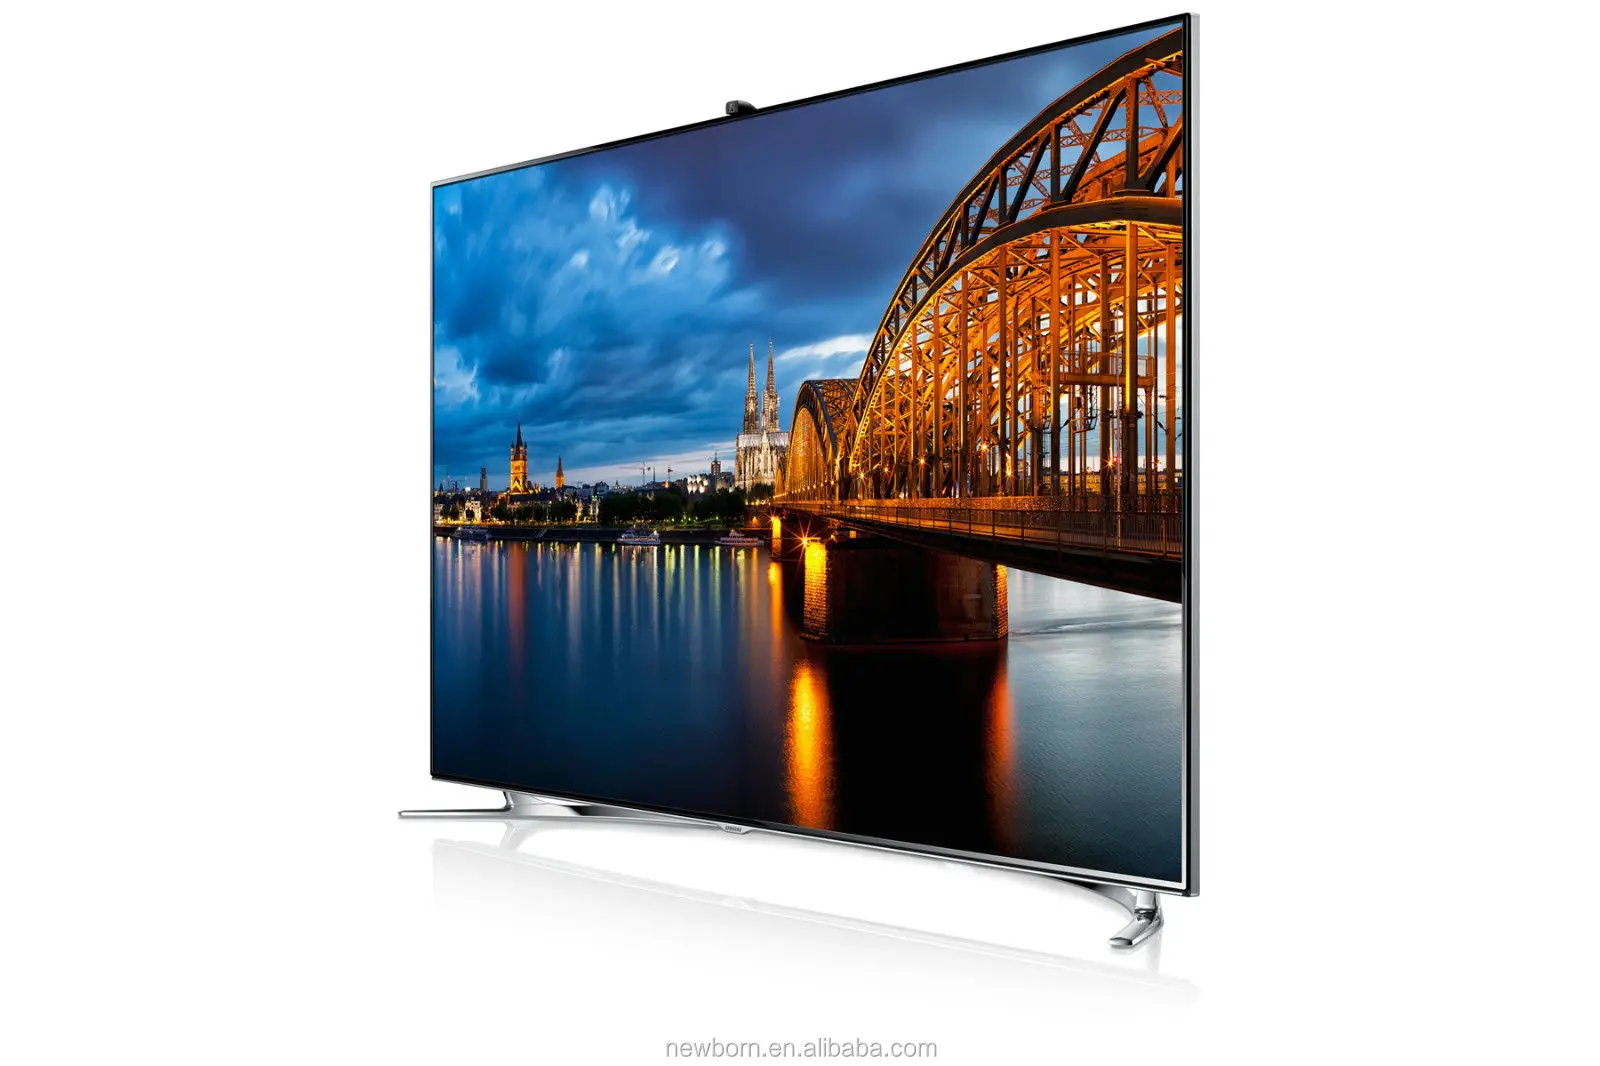 Телевизор самсунг в новосибирске. Samsung ue46f8000 led. Samsung f8000 55 телевизор. Samsung 40 f8000. Samsung led 55 Smart TV.